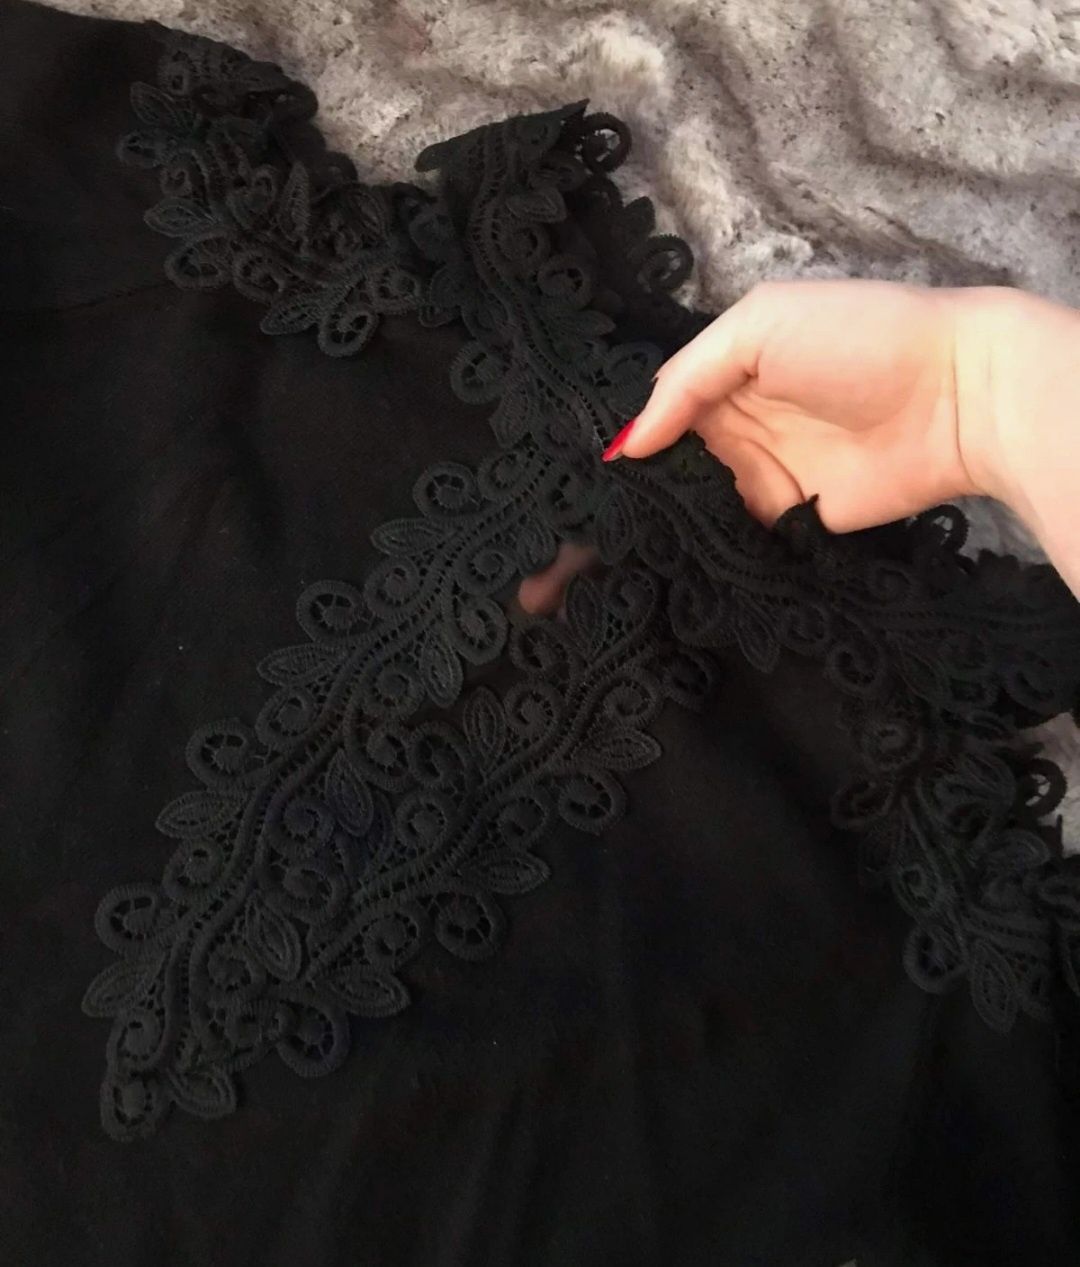 Mała czarna sweterkowa sukienka